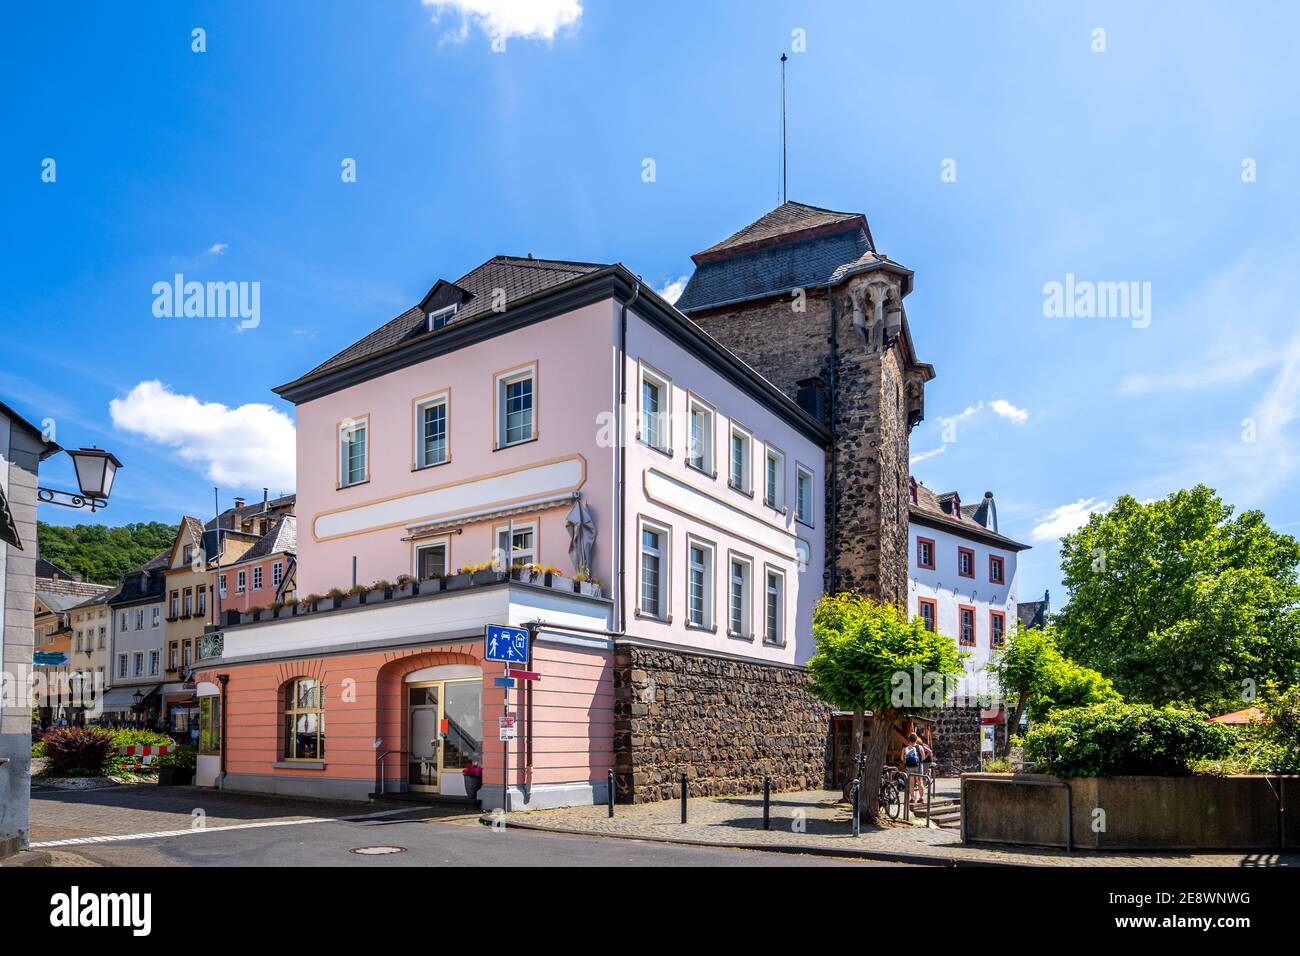 Place du château à Linz am Rhein, Allemagne Banque D'Images